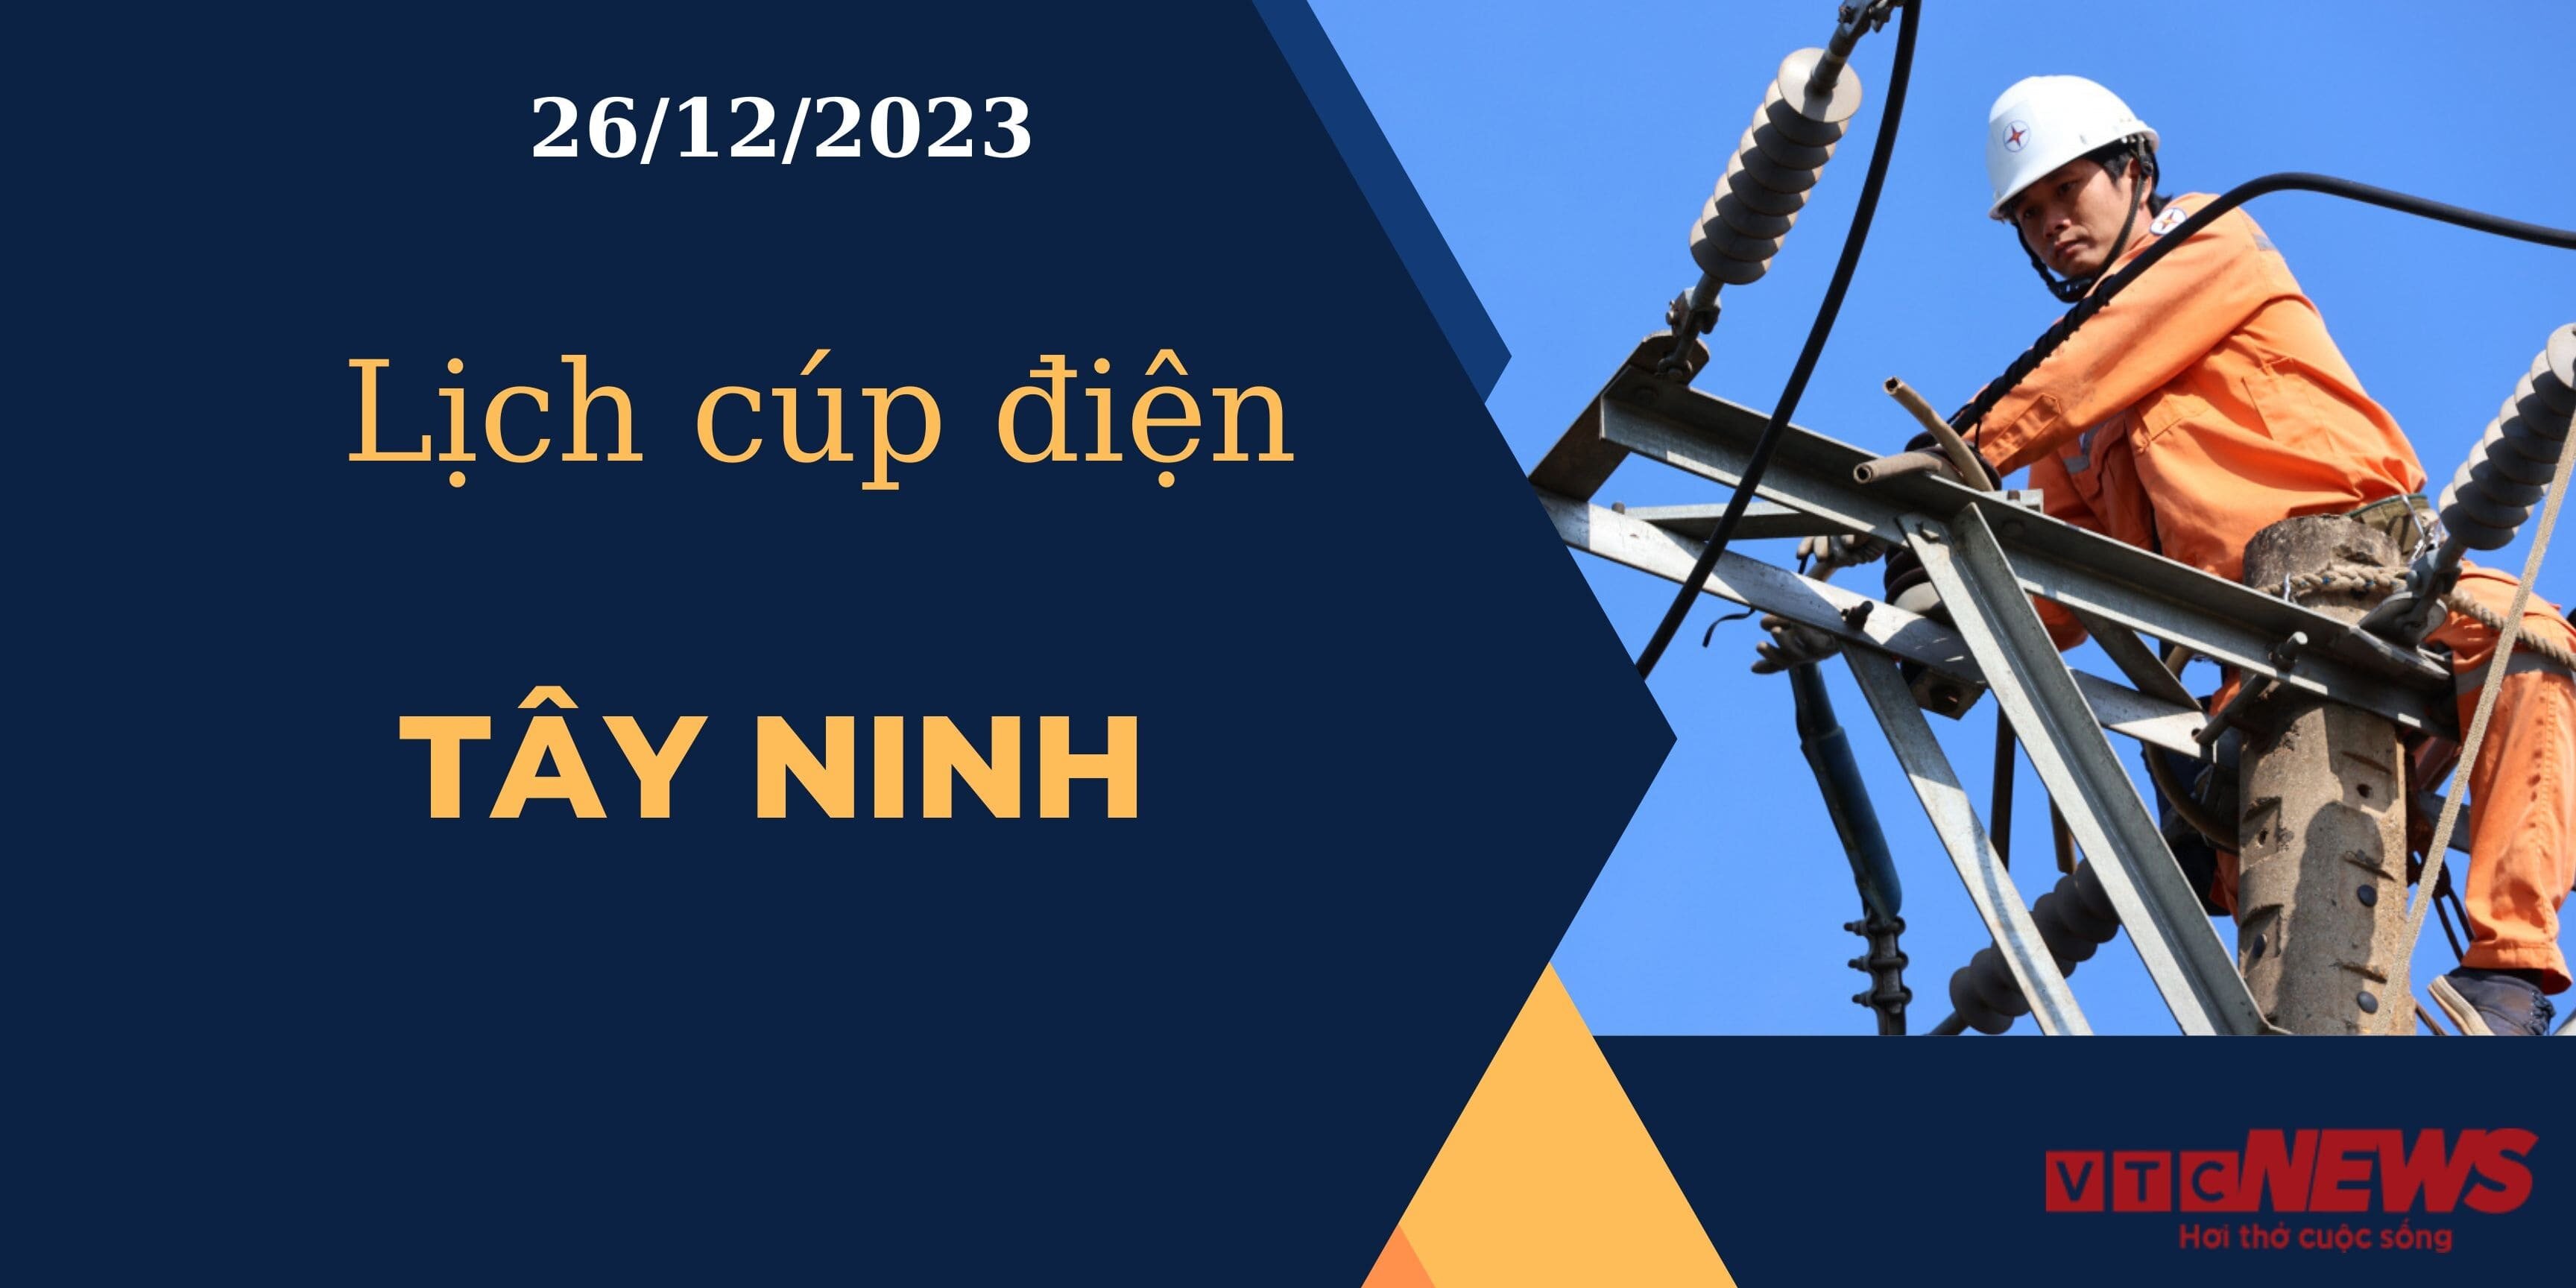 Lịch cúp điện hôm nay ngày 26/12/2023 tại Tây Ninh